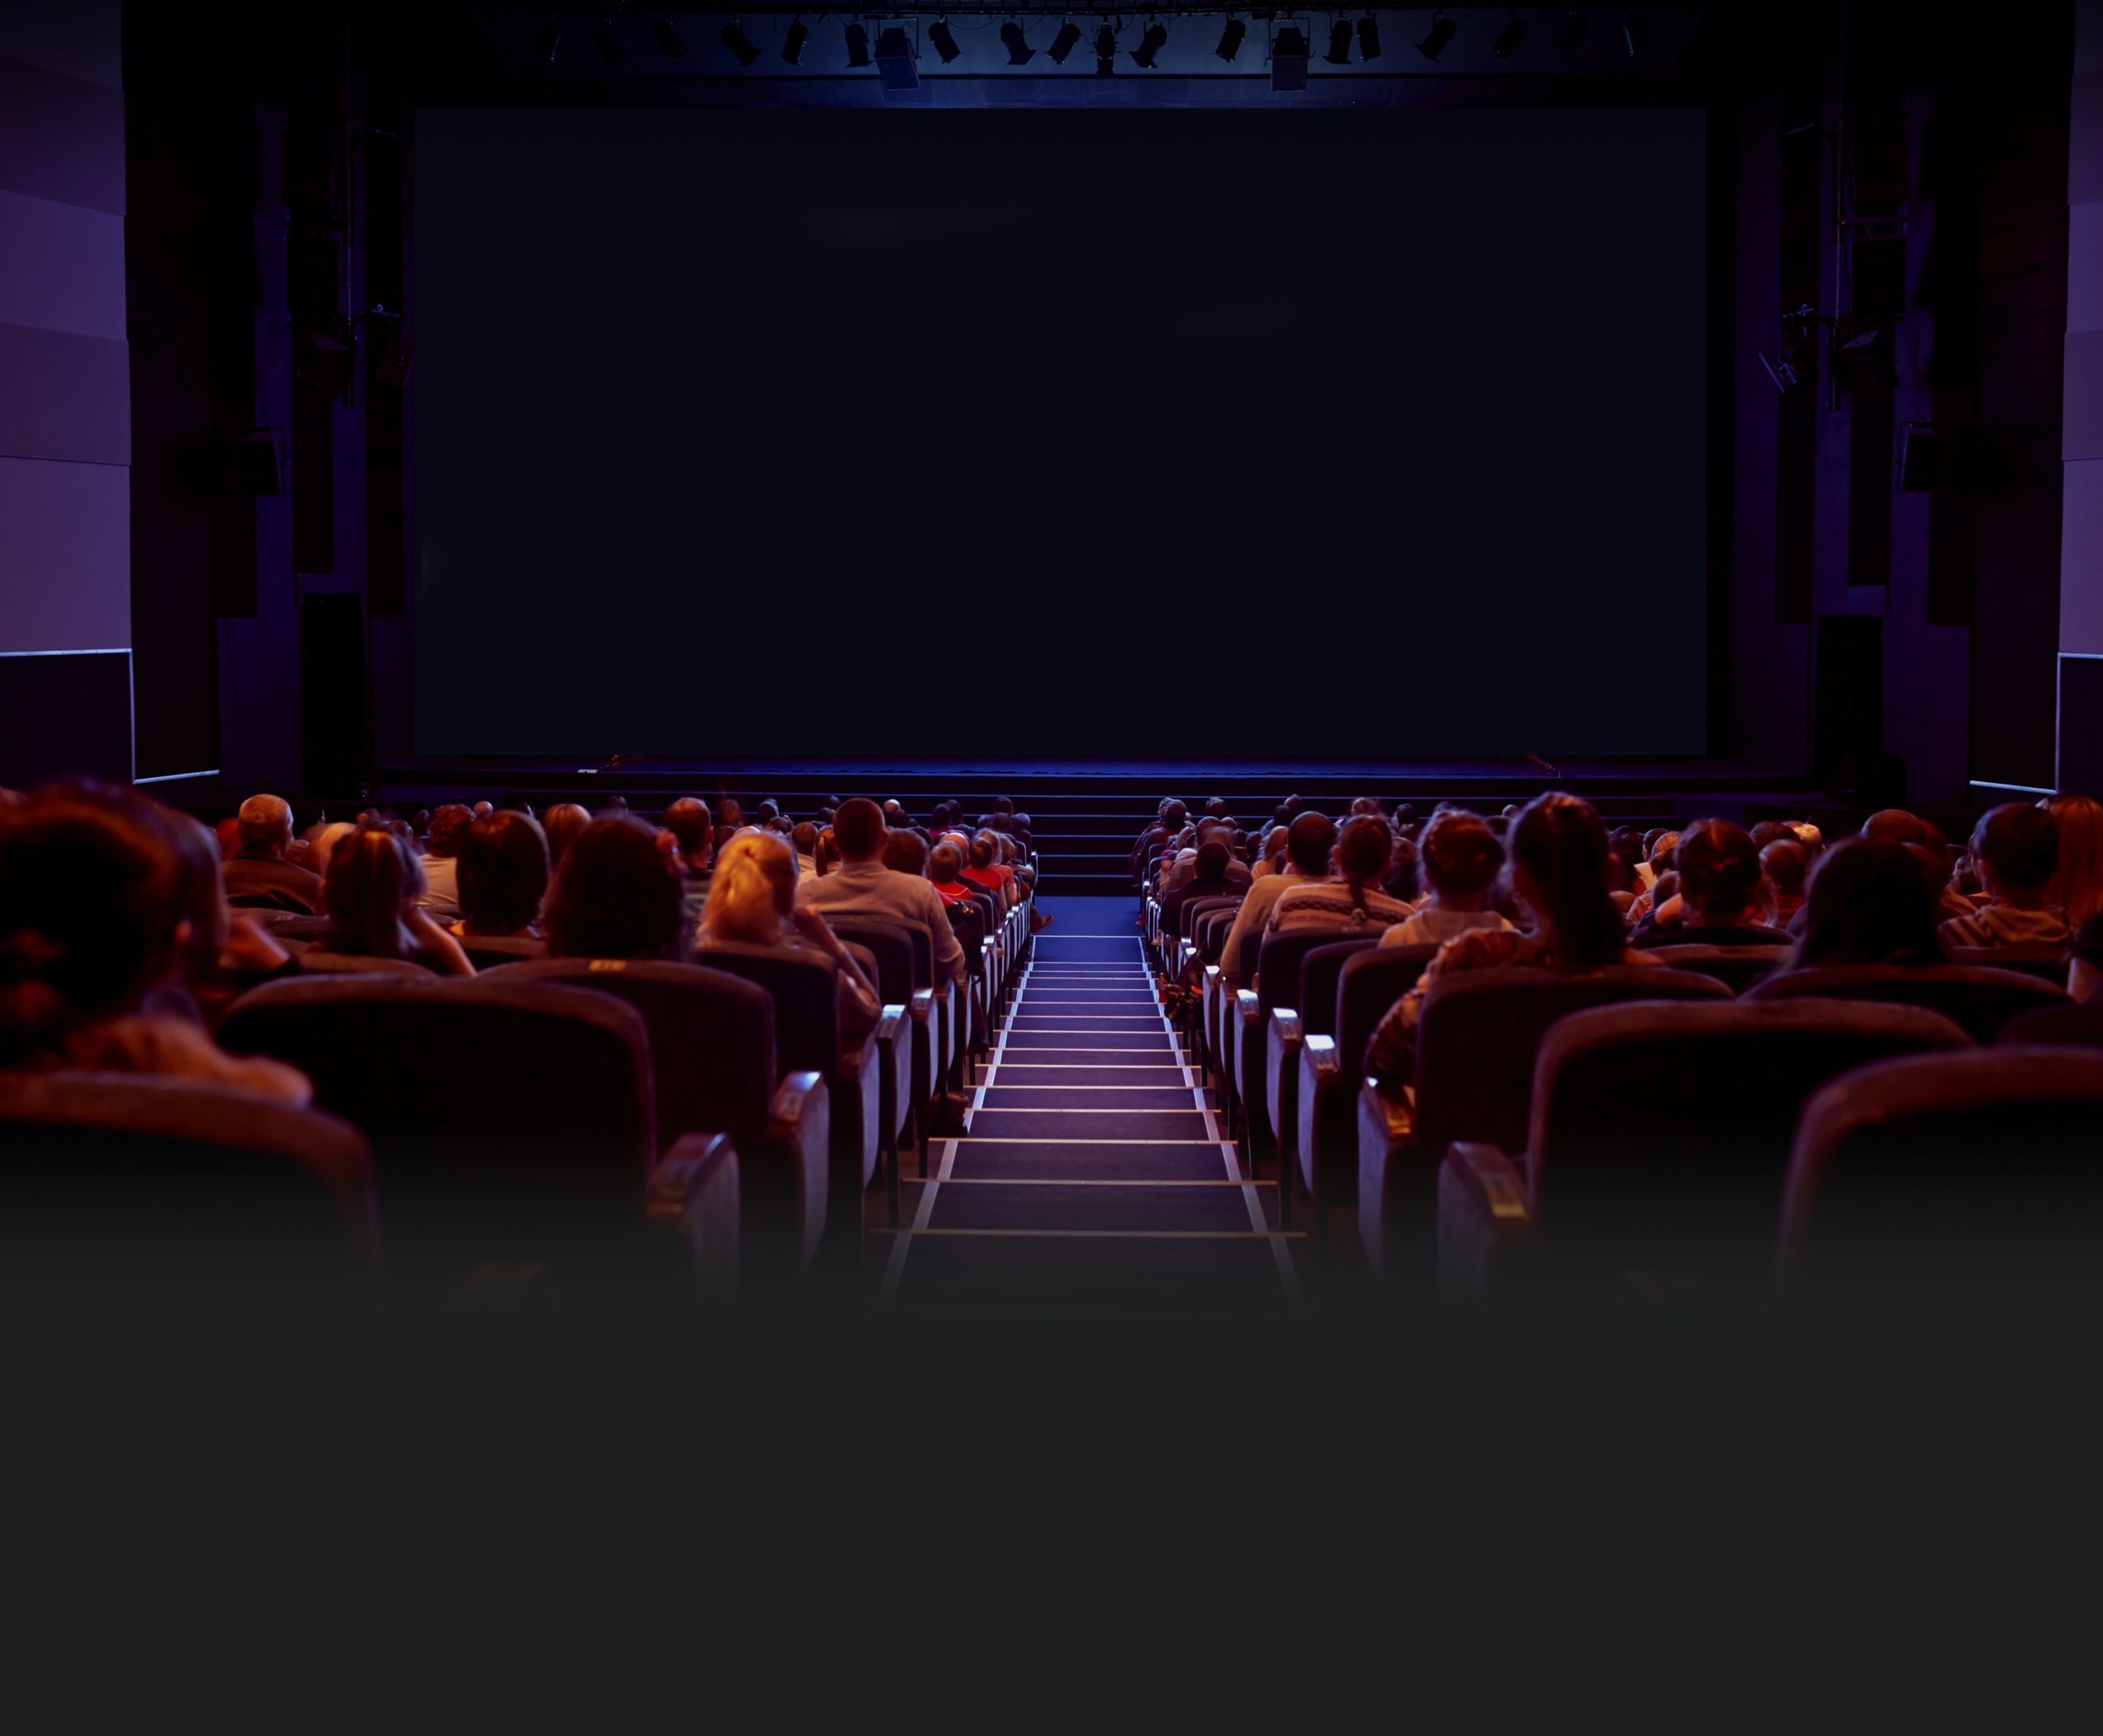 een donkere bioscoopzaal met veel publiek in de bioscoopstoelen